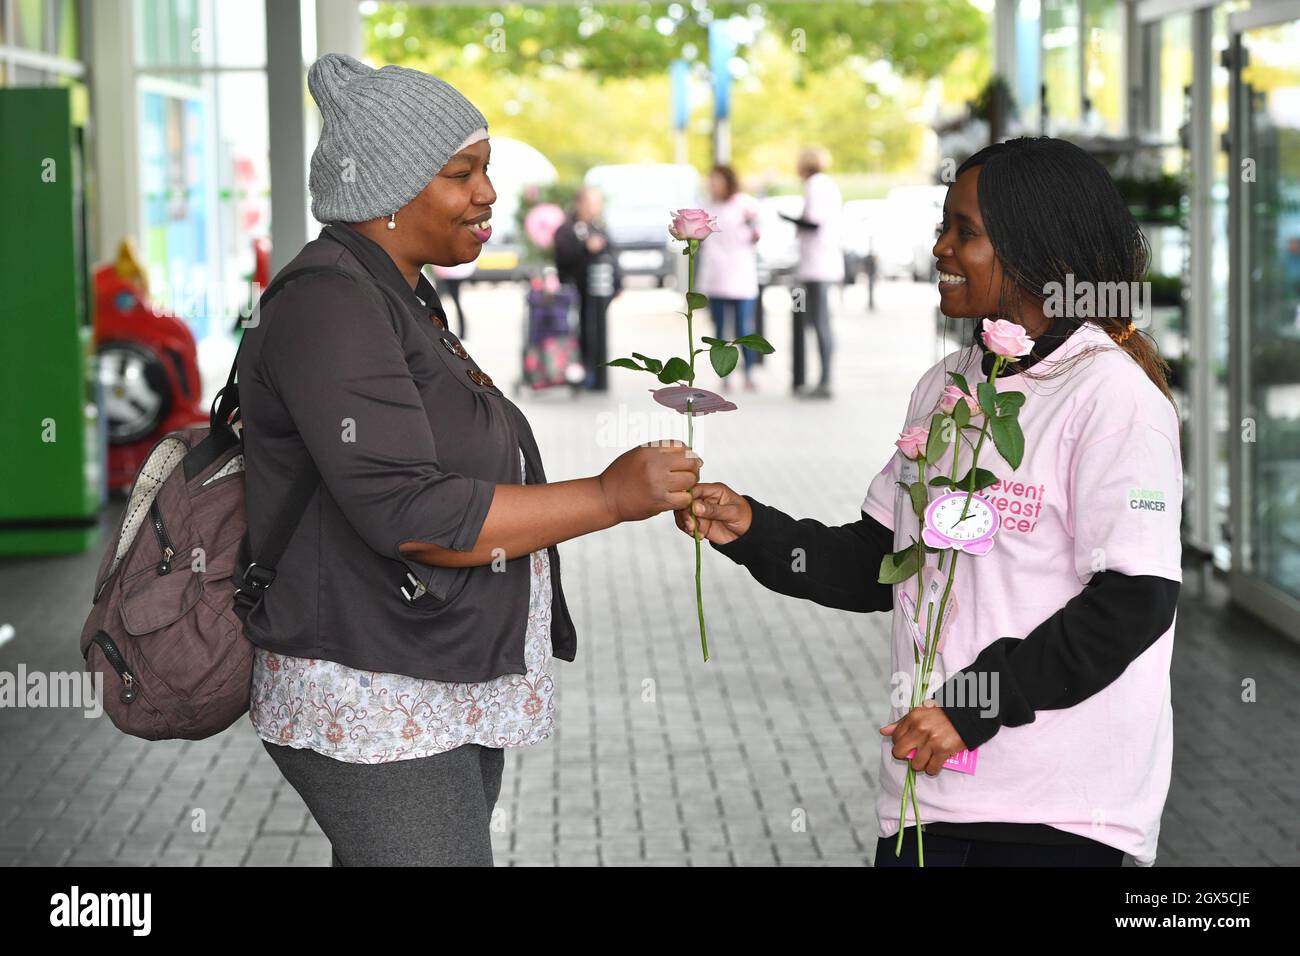 UTILISATION ÉDITORIALE SEULEMENT Un volontaire met une rose à Jane, de Manchester, lors d'un événement pop-up organisé par la société de santé féminine Hologic and PENVENTE Breast cancer, pour lancer la campagne « c'est le temps », soulignant l'importance de participer aux dépistages du cancer du sein lorsqu'ils sont éligibles, à Manchester. Date de la photo: Lundi 4 octobre 2021. Banque D'Images